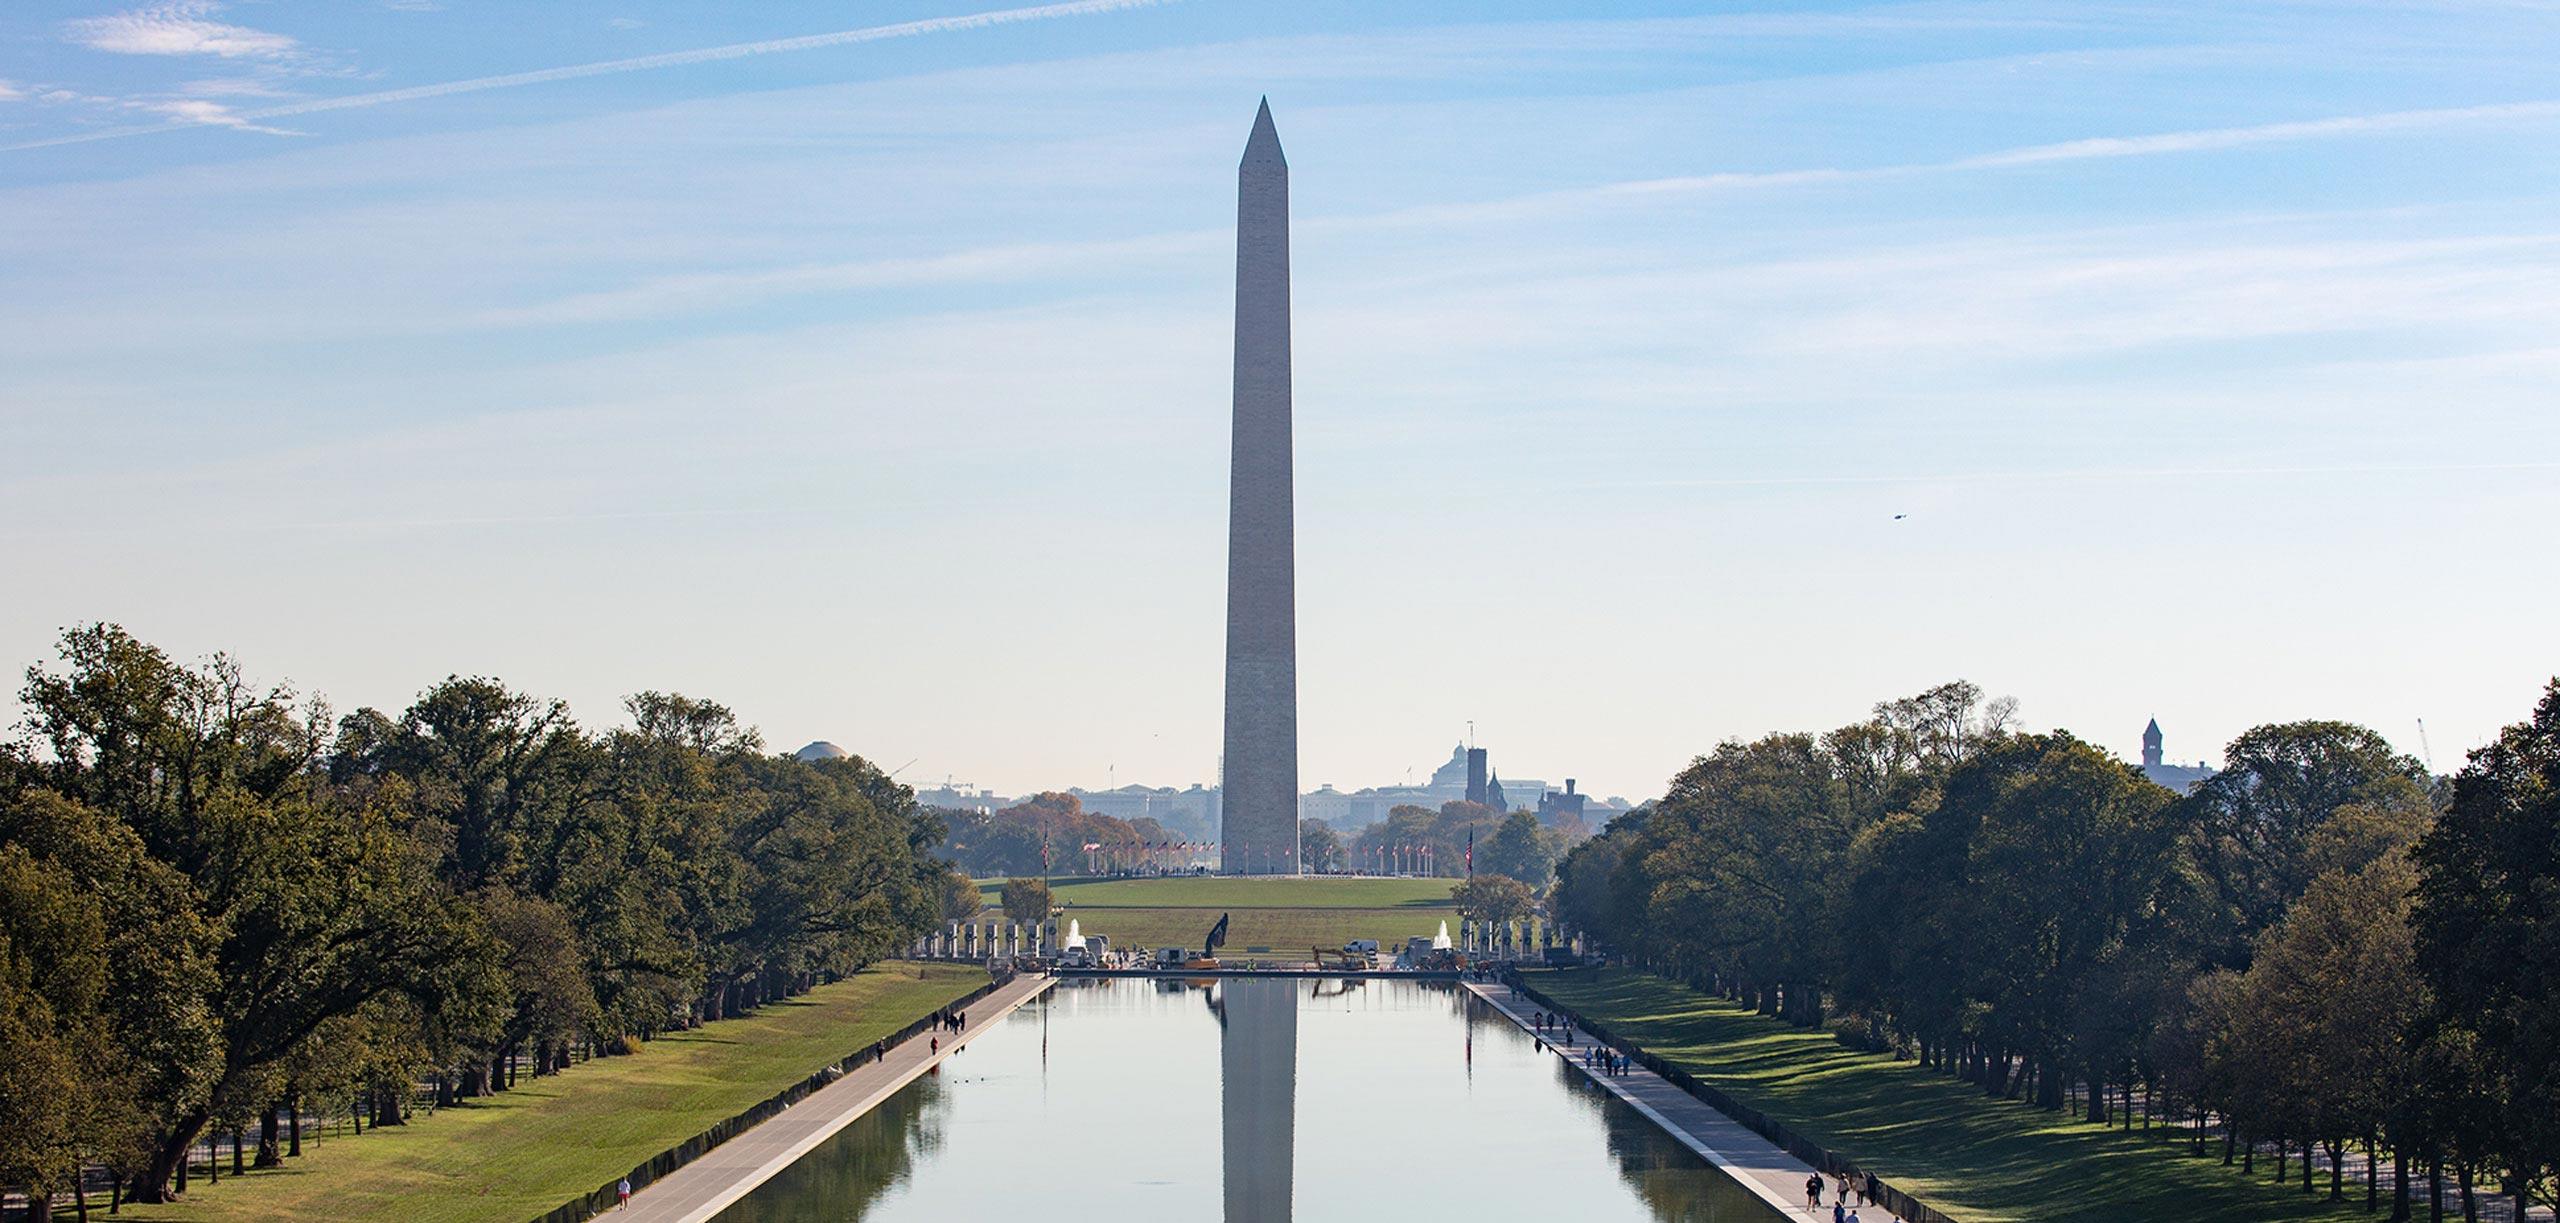 The Washington monument